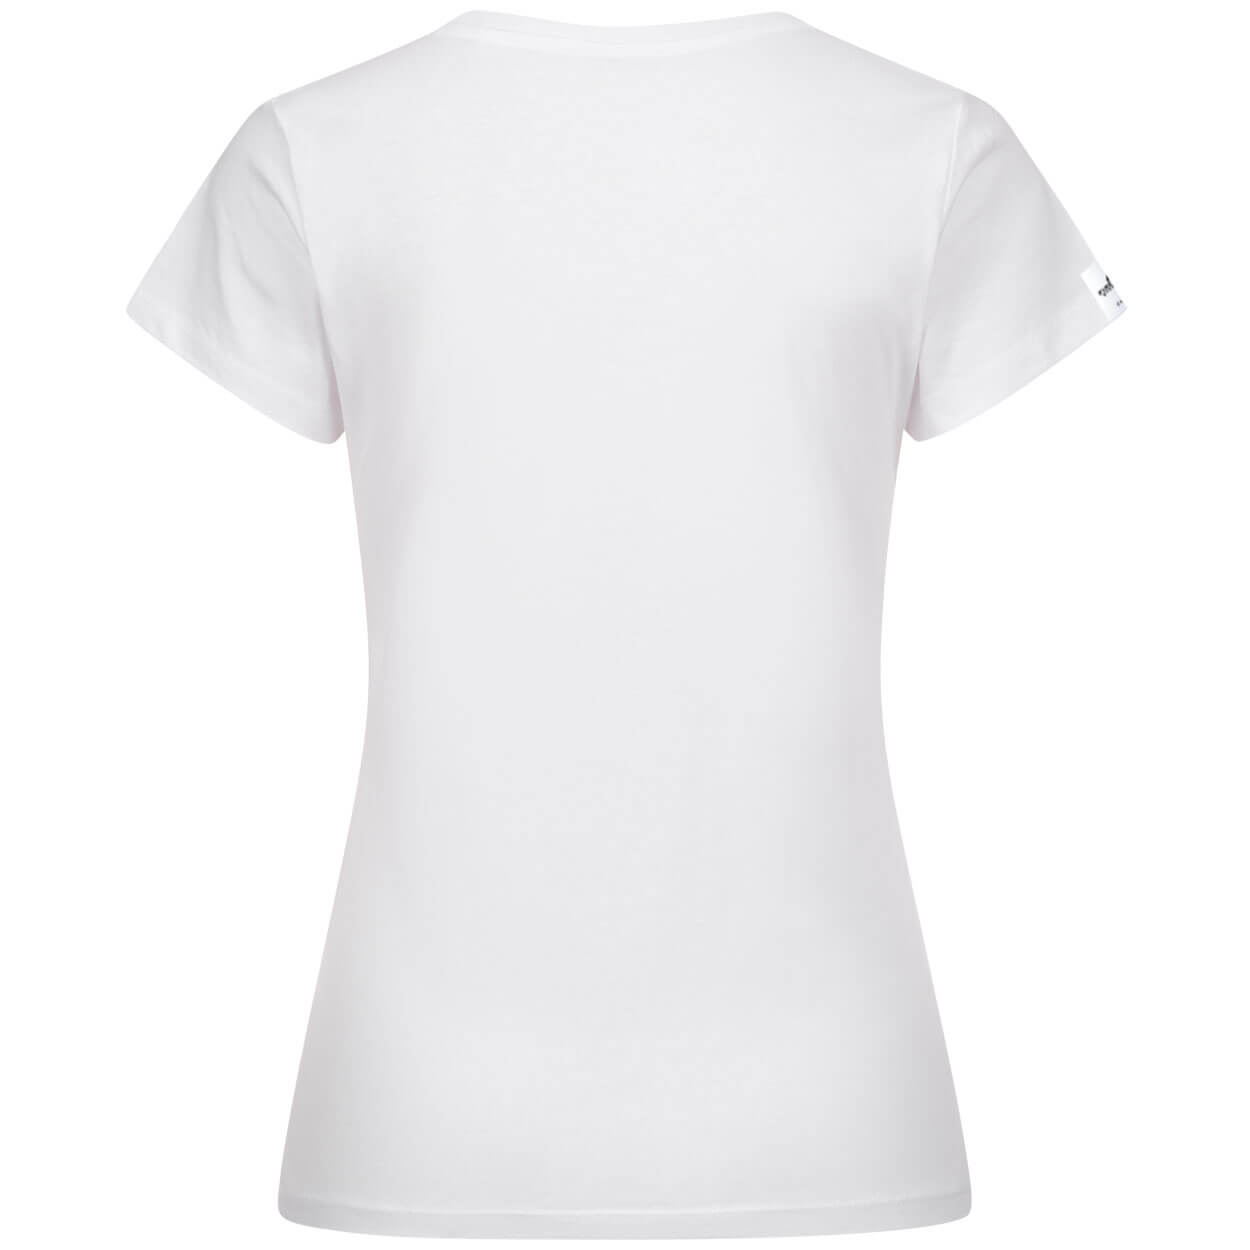 Angriffstrupp Feuerwehr Design - Frauen T-Shirt